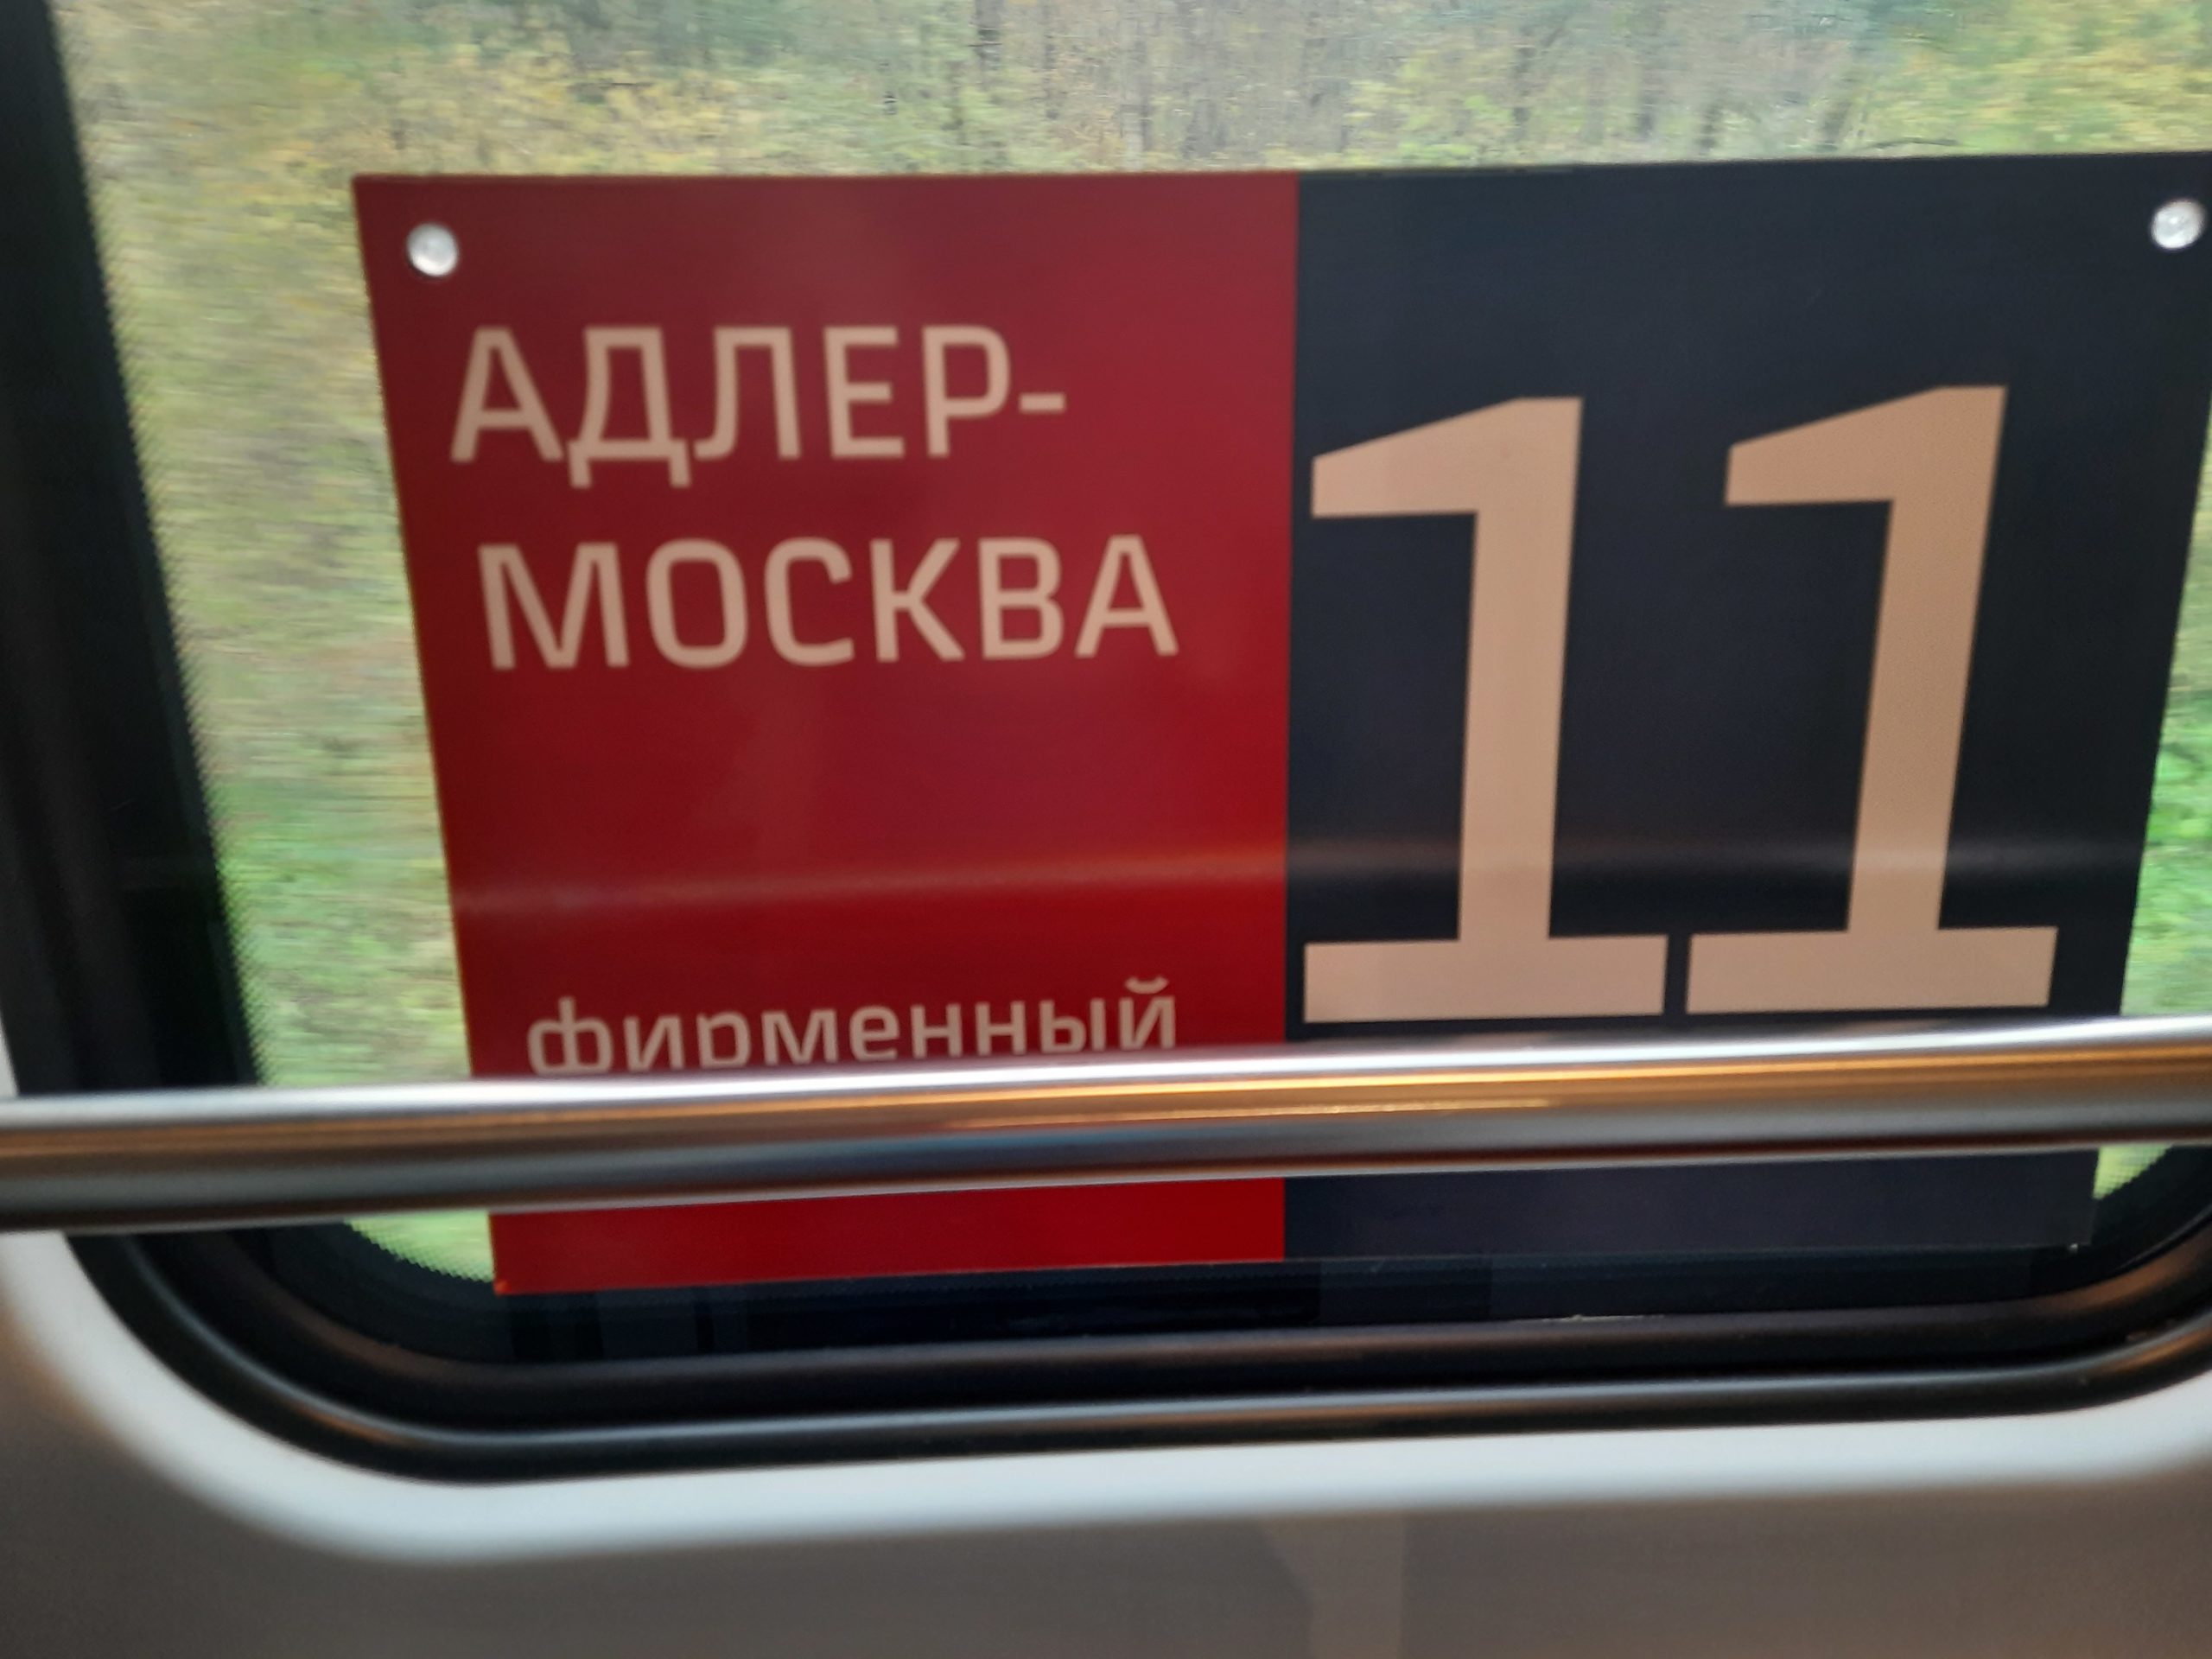 фирменный поезд 102м москва адлер